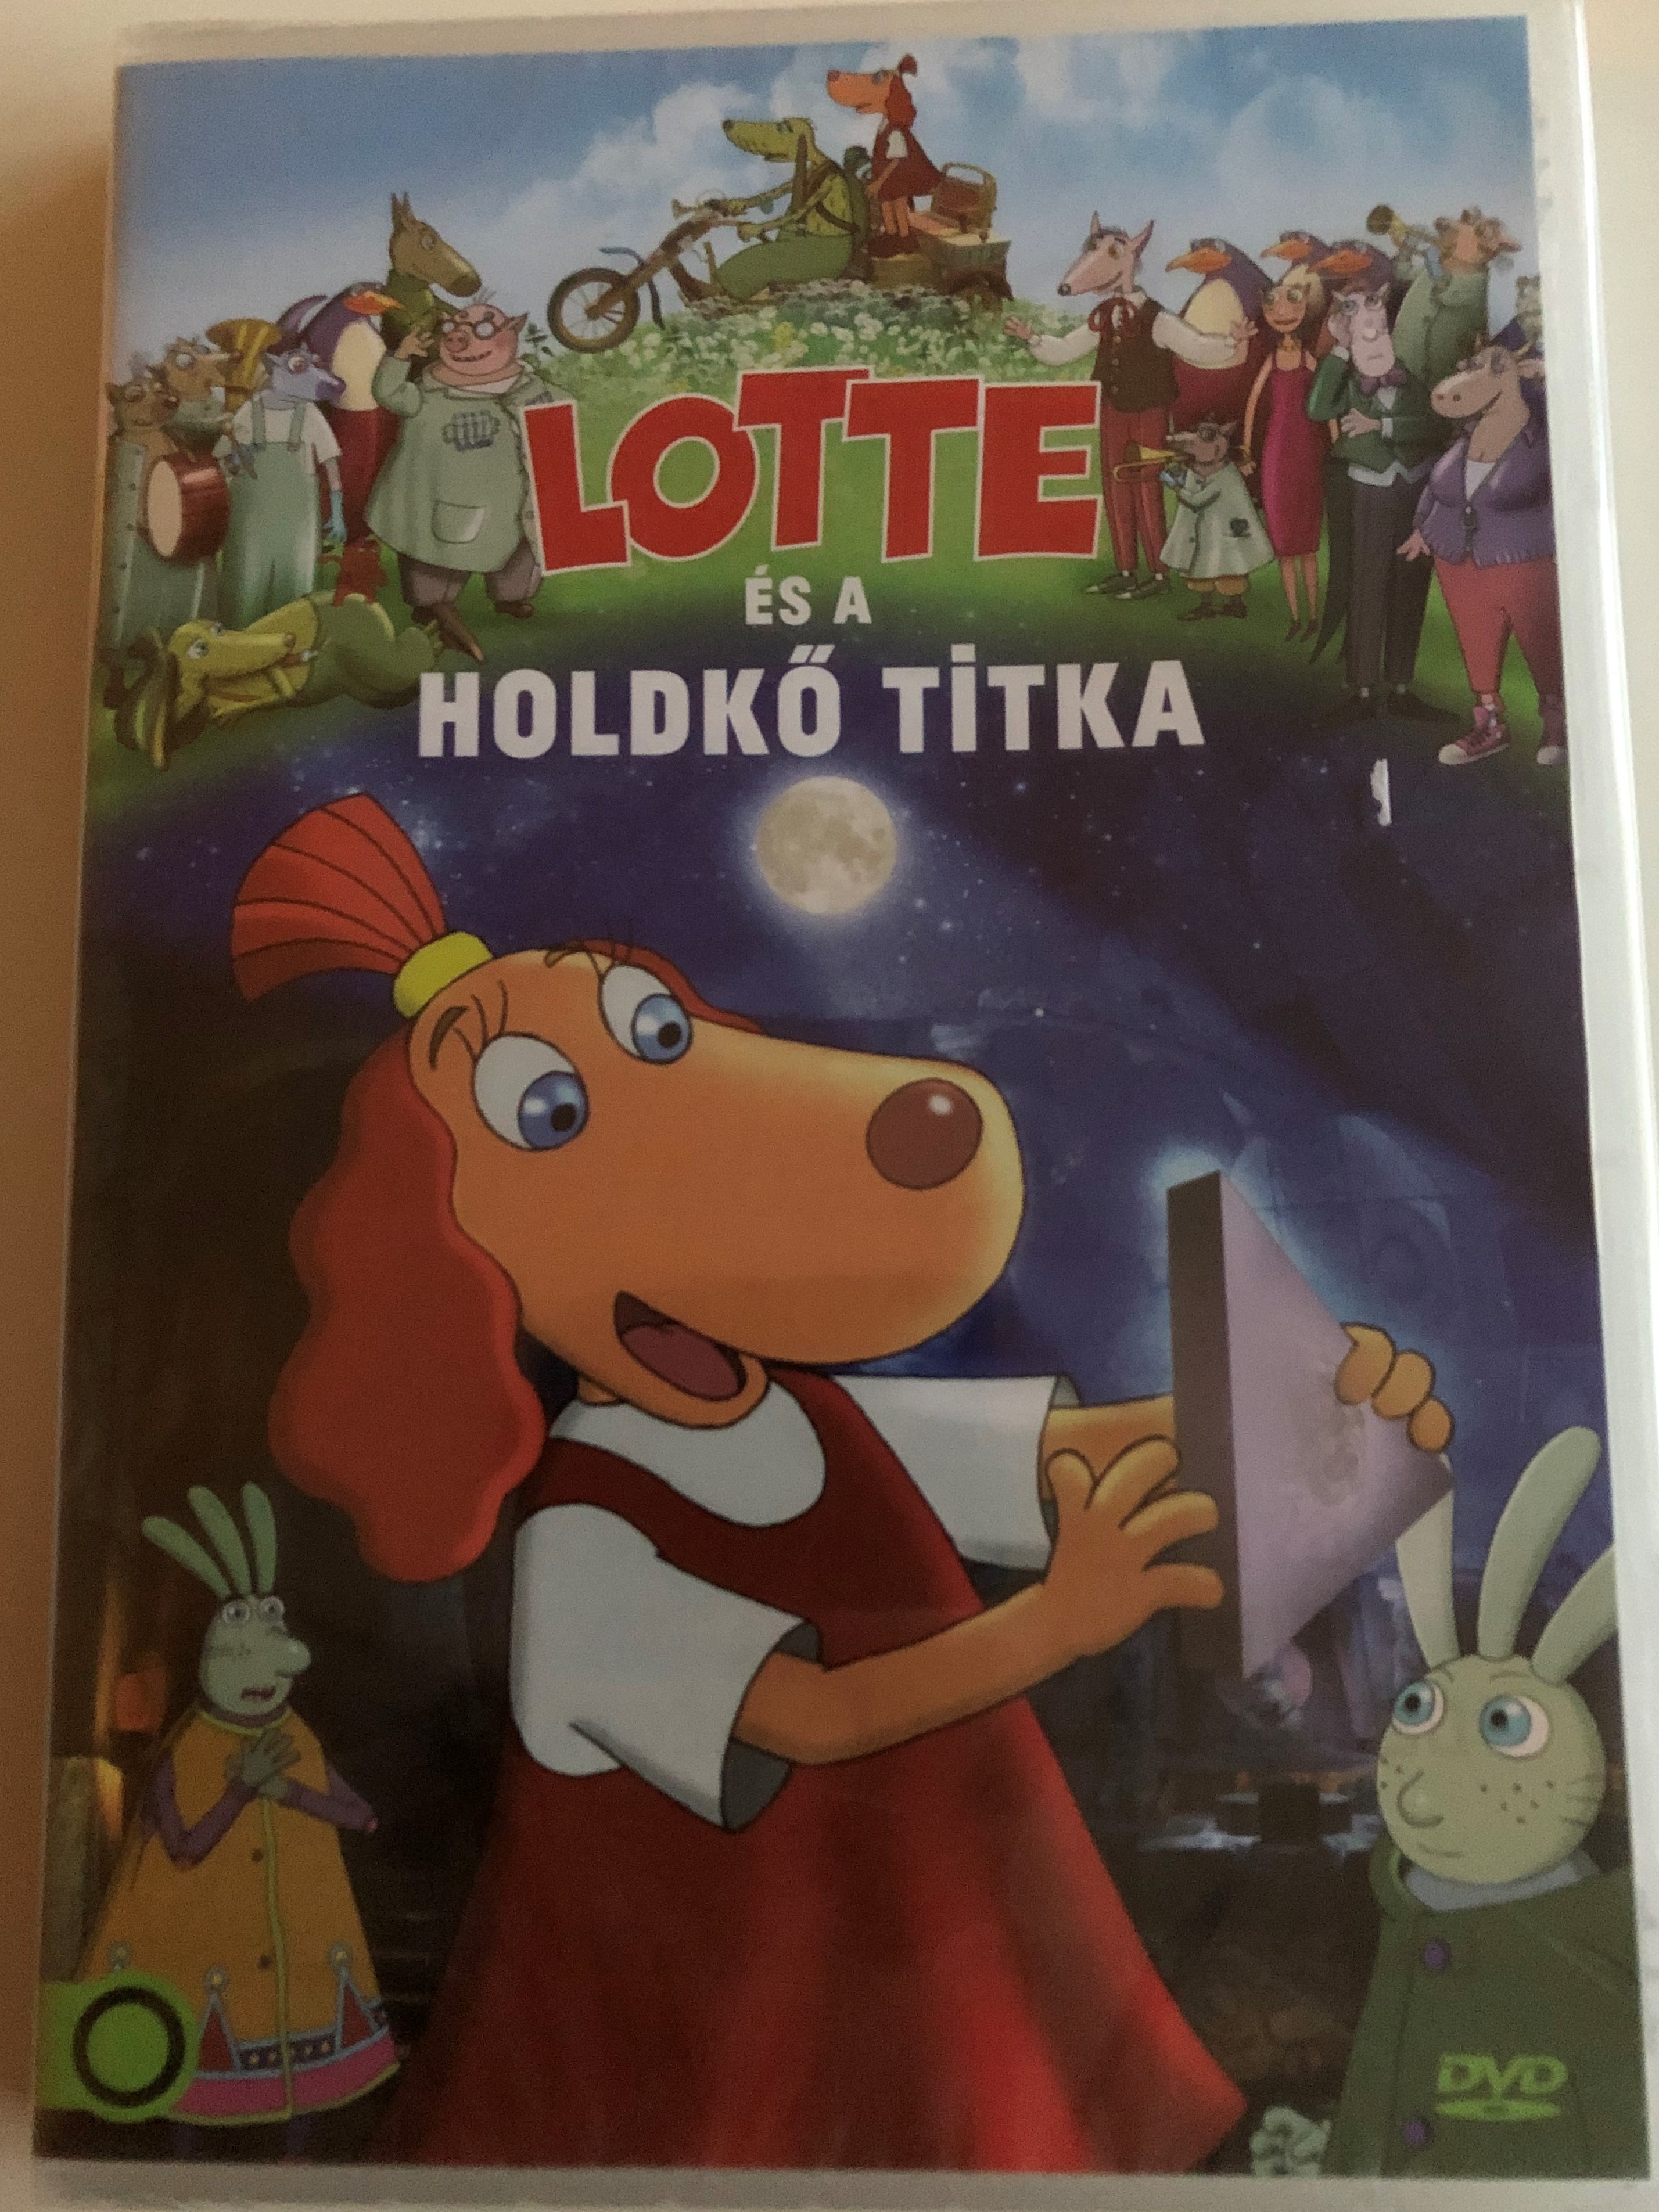 lotte-ja-kuukivi-saladus-dvd-2011-lotte-s-a-holdk-titk-1.jpg